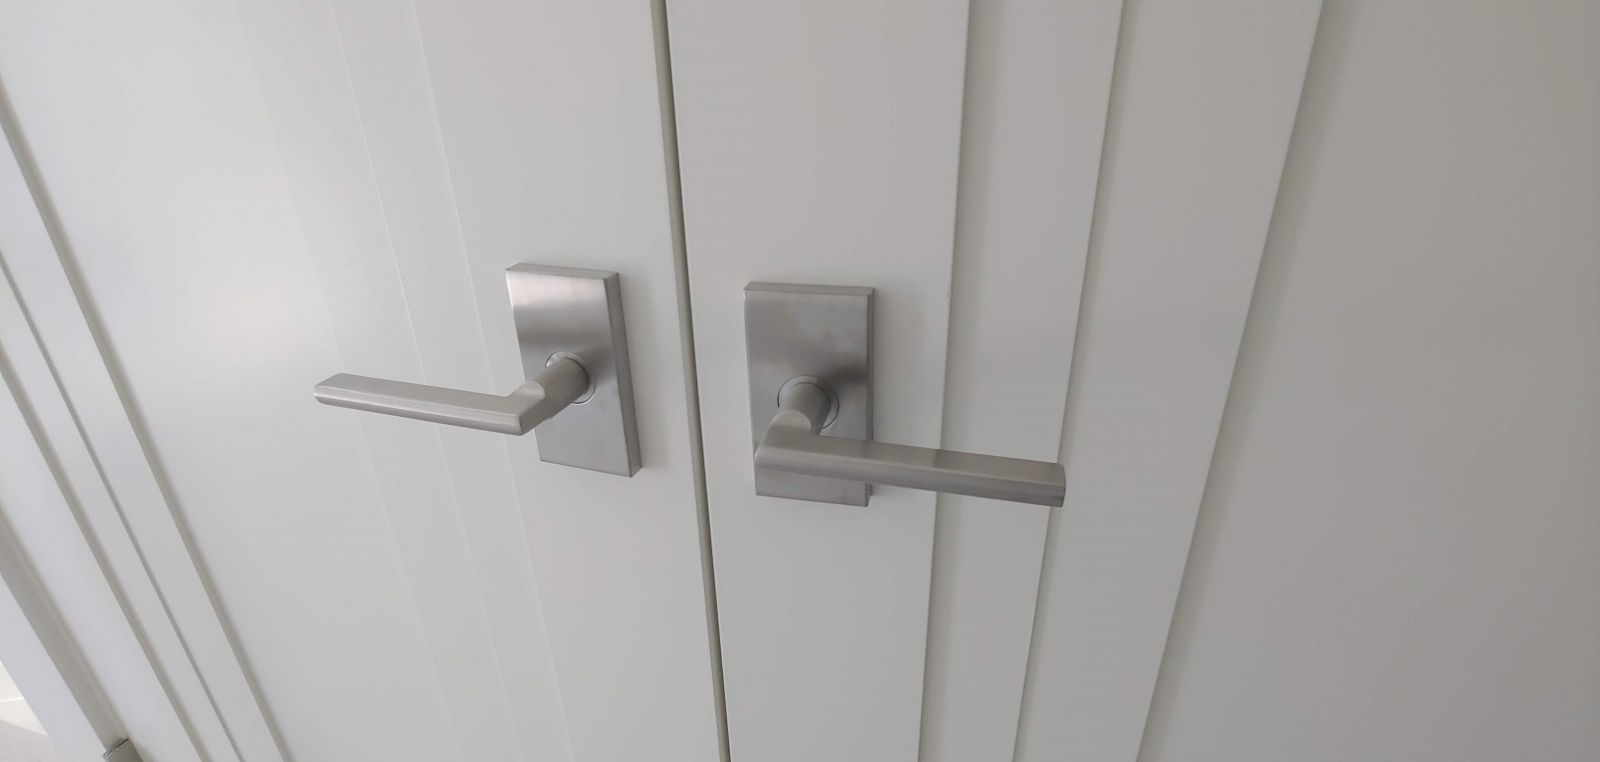 Modern interior door handles